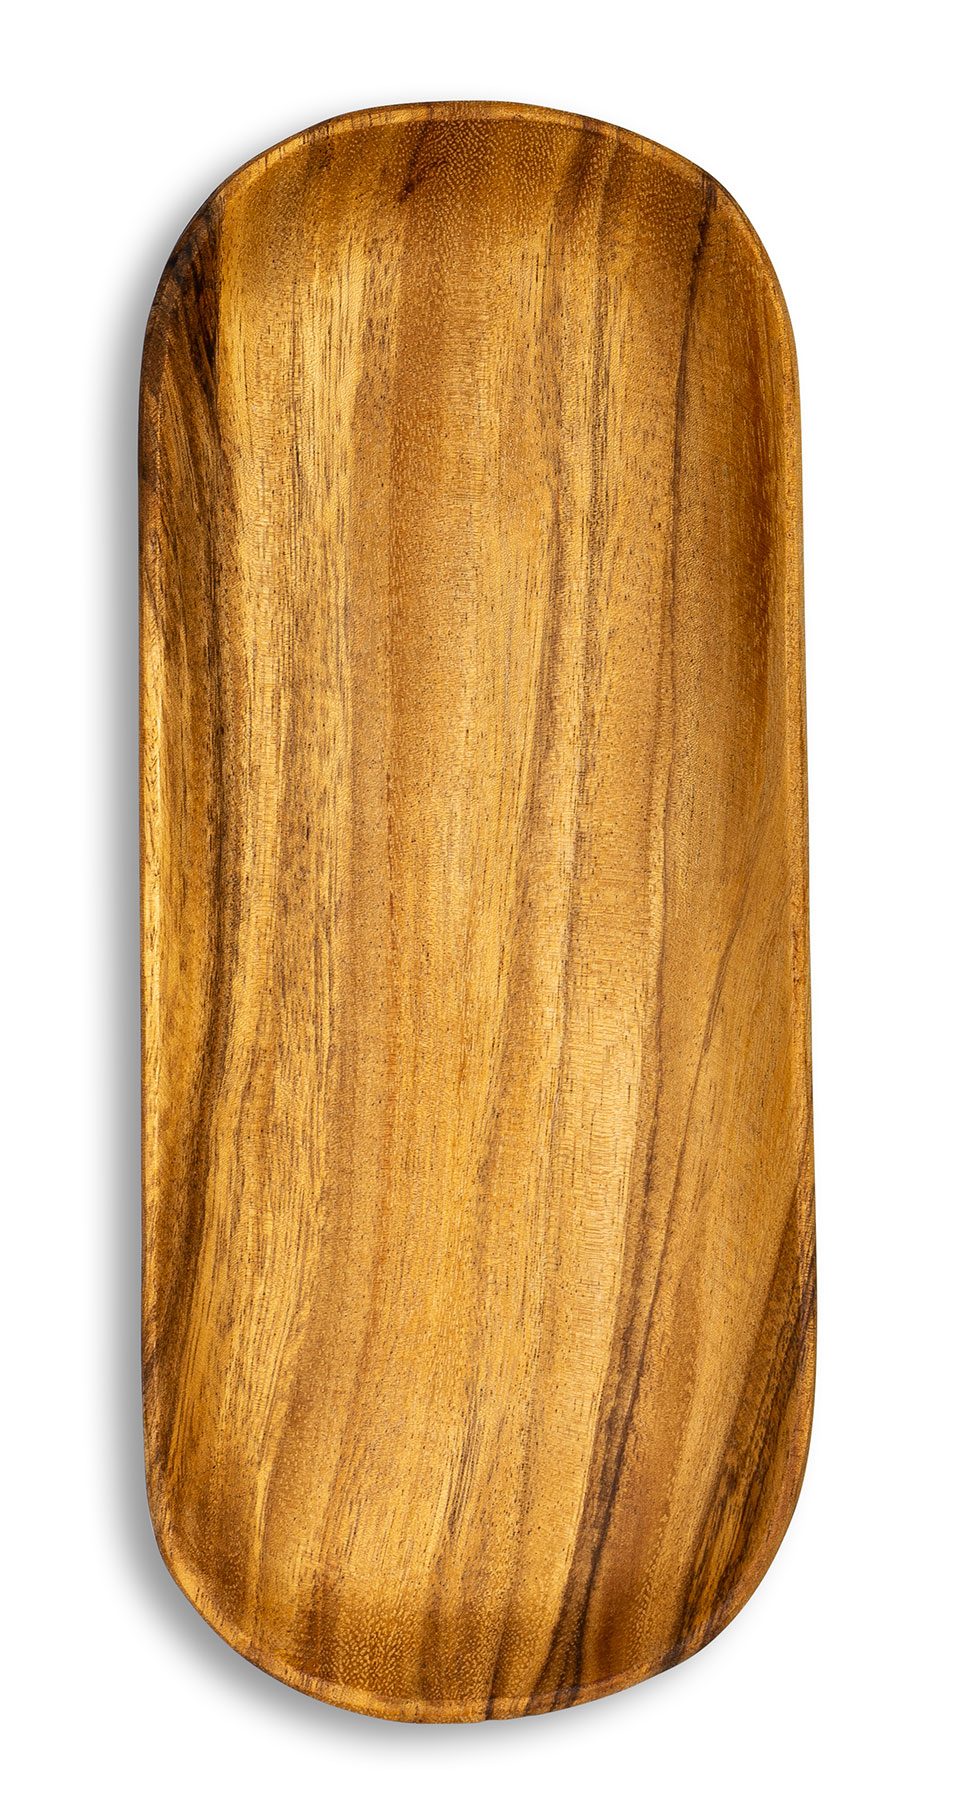 Holztablett Akazie 35x15cm Rechteckig Schale Obstschale Tablett Oval Holz Unikat